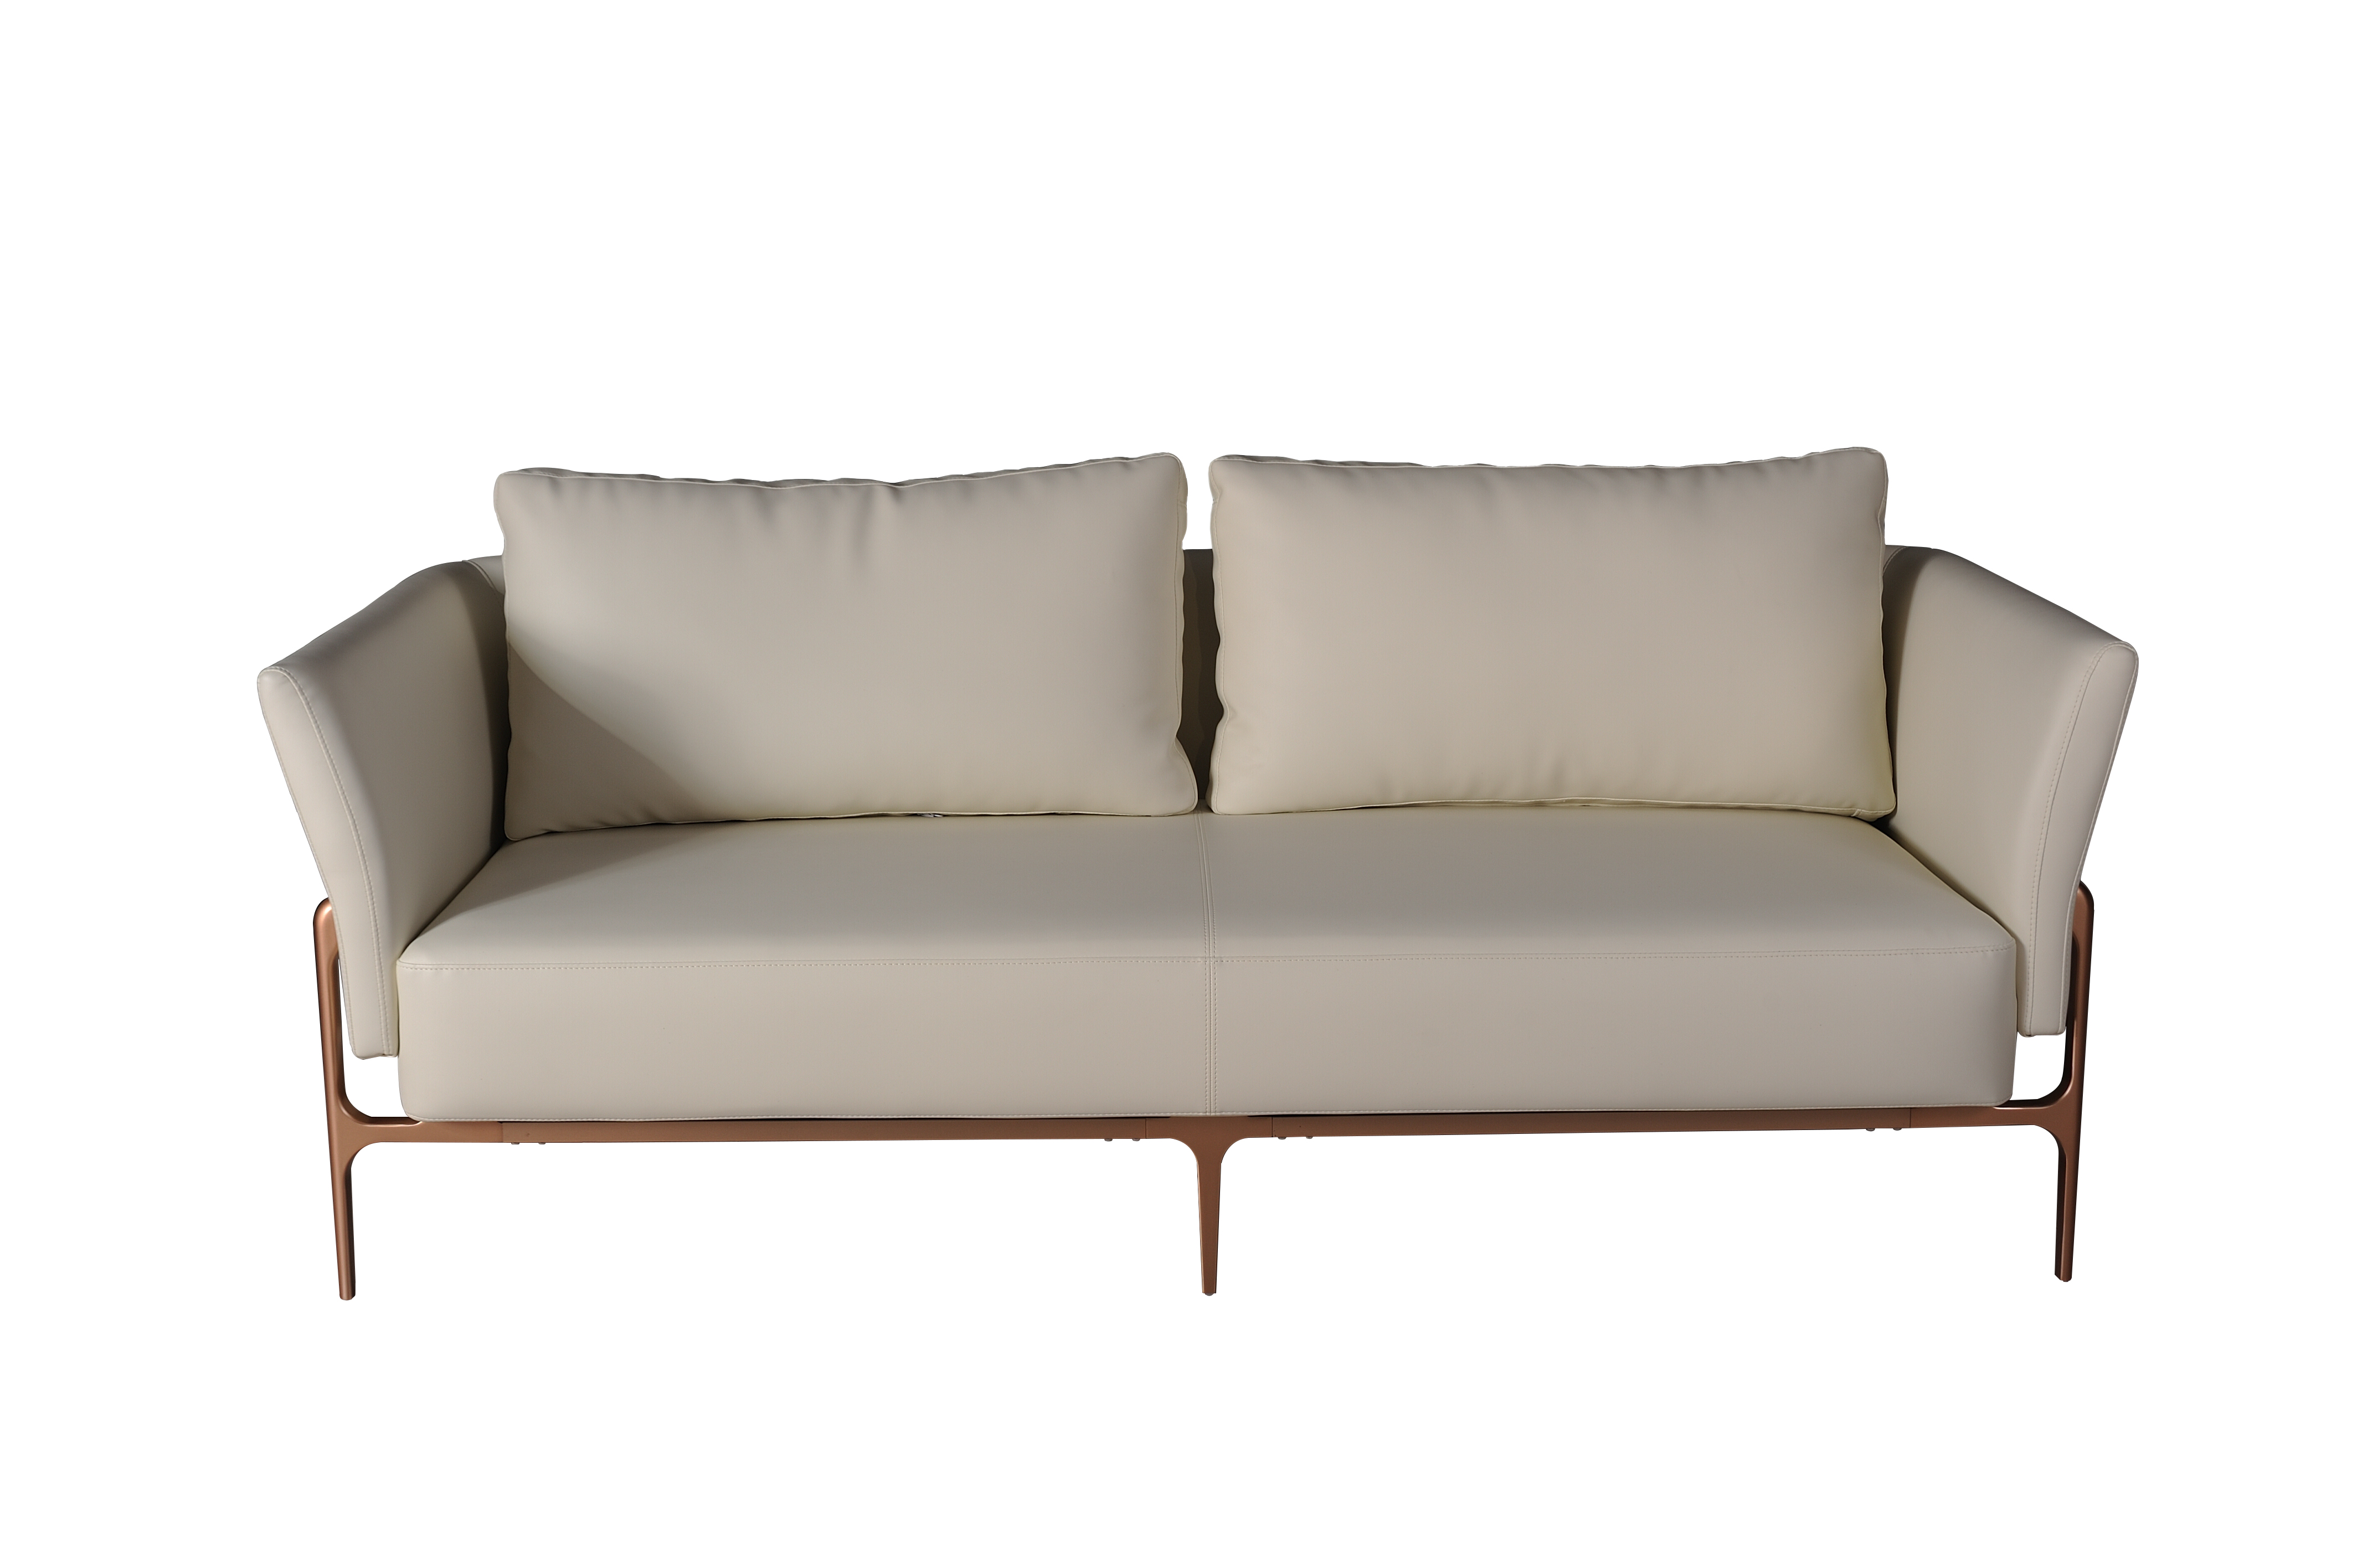 Tengye TENGYE new light luxury designer sofa stainless steel brushed brass living room leisure sofa SF-818